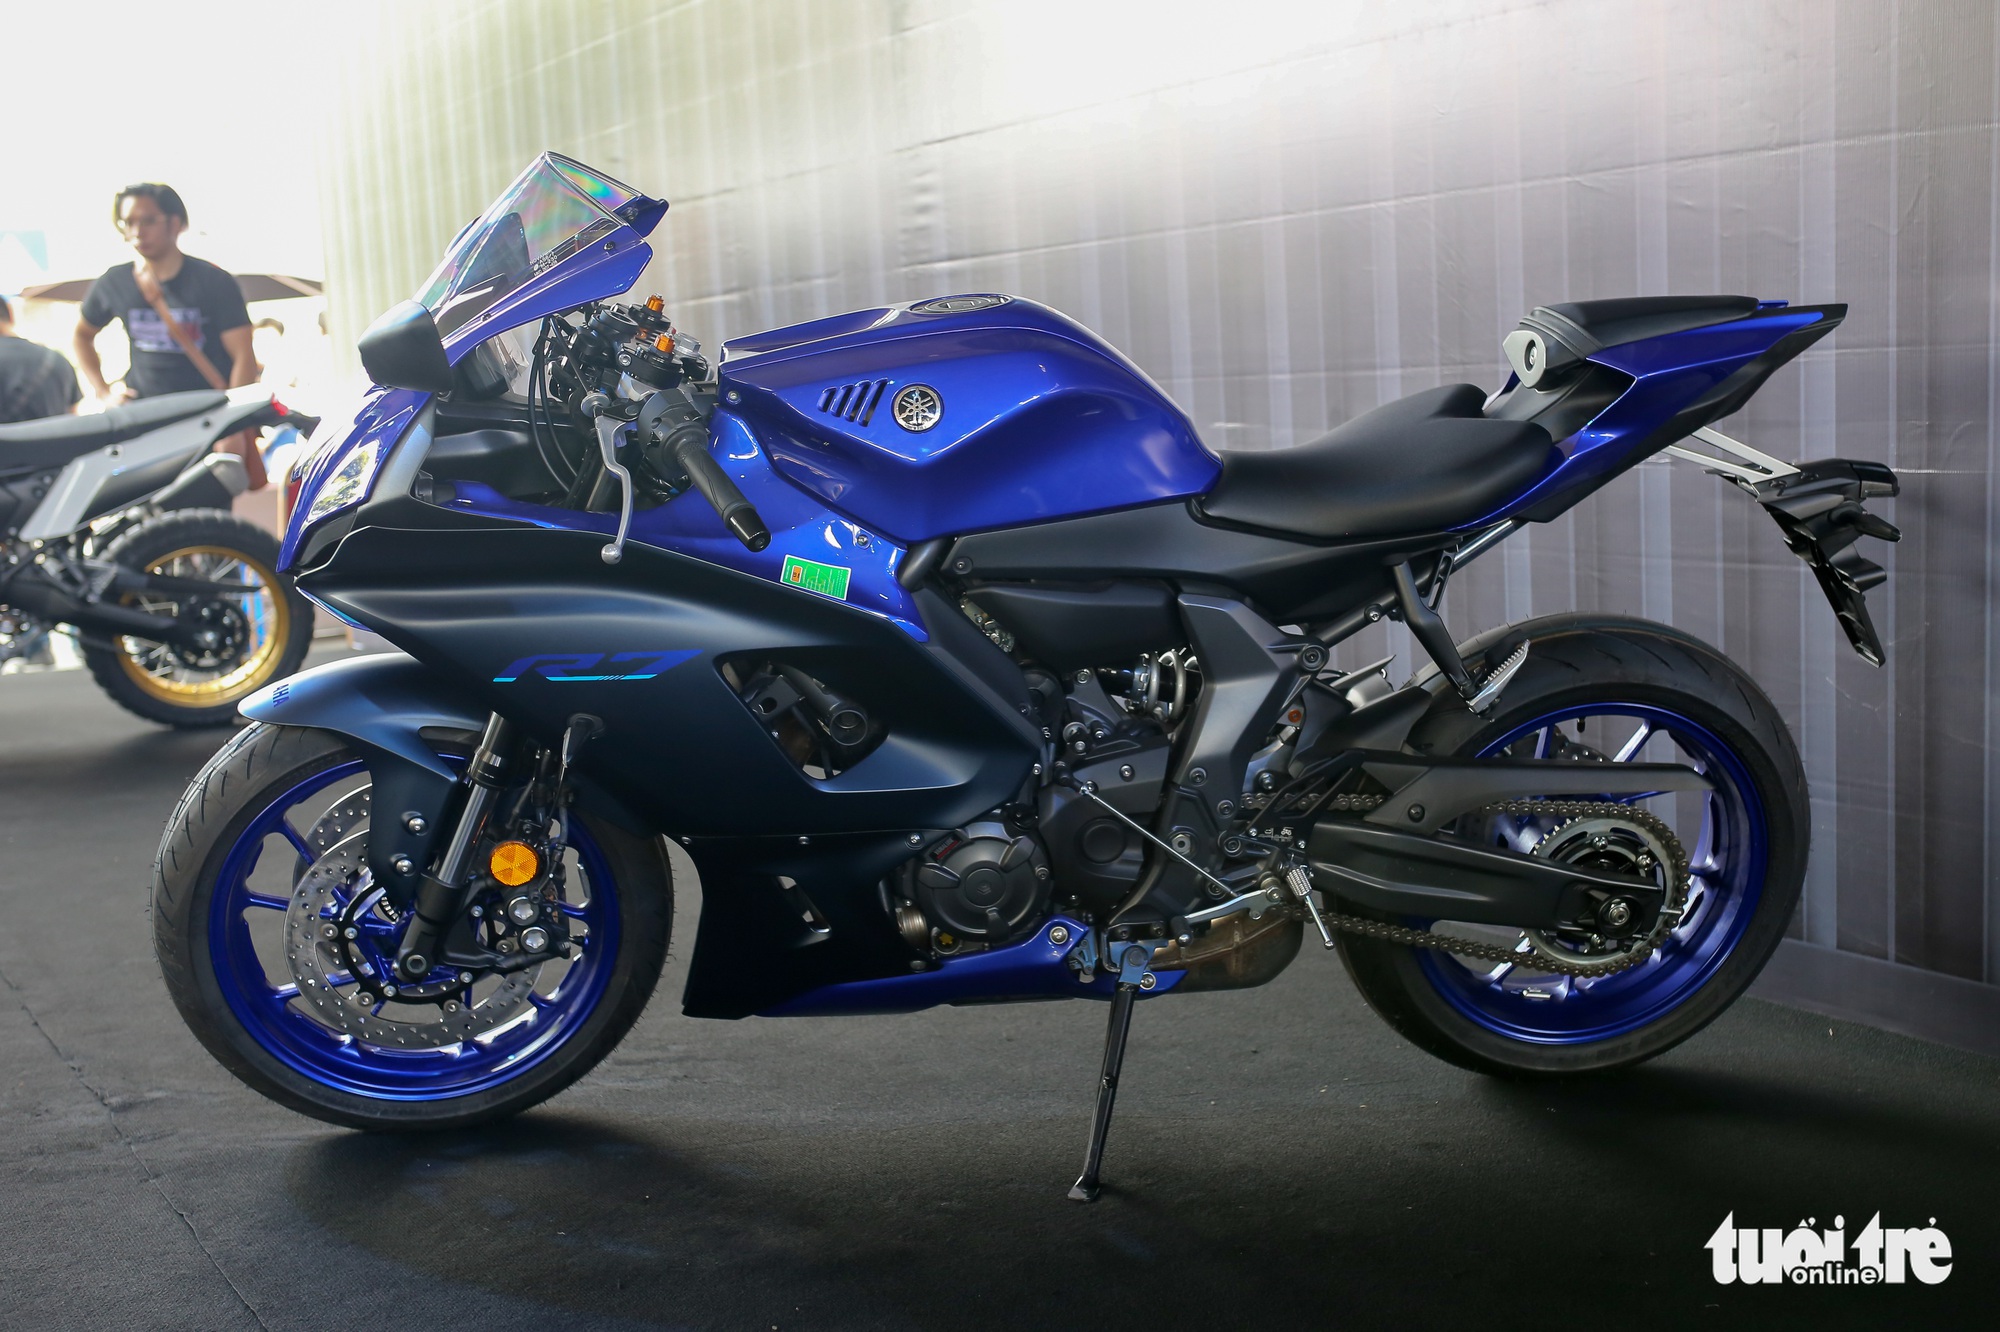 Yamaha YZF-R7 - Sportbike tầm trung giá 269 triệu đồng, thay thế 'huyền thoại' R6 - Ảnh 2.